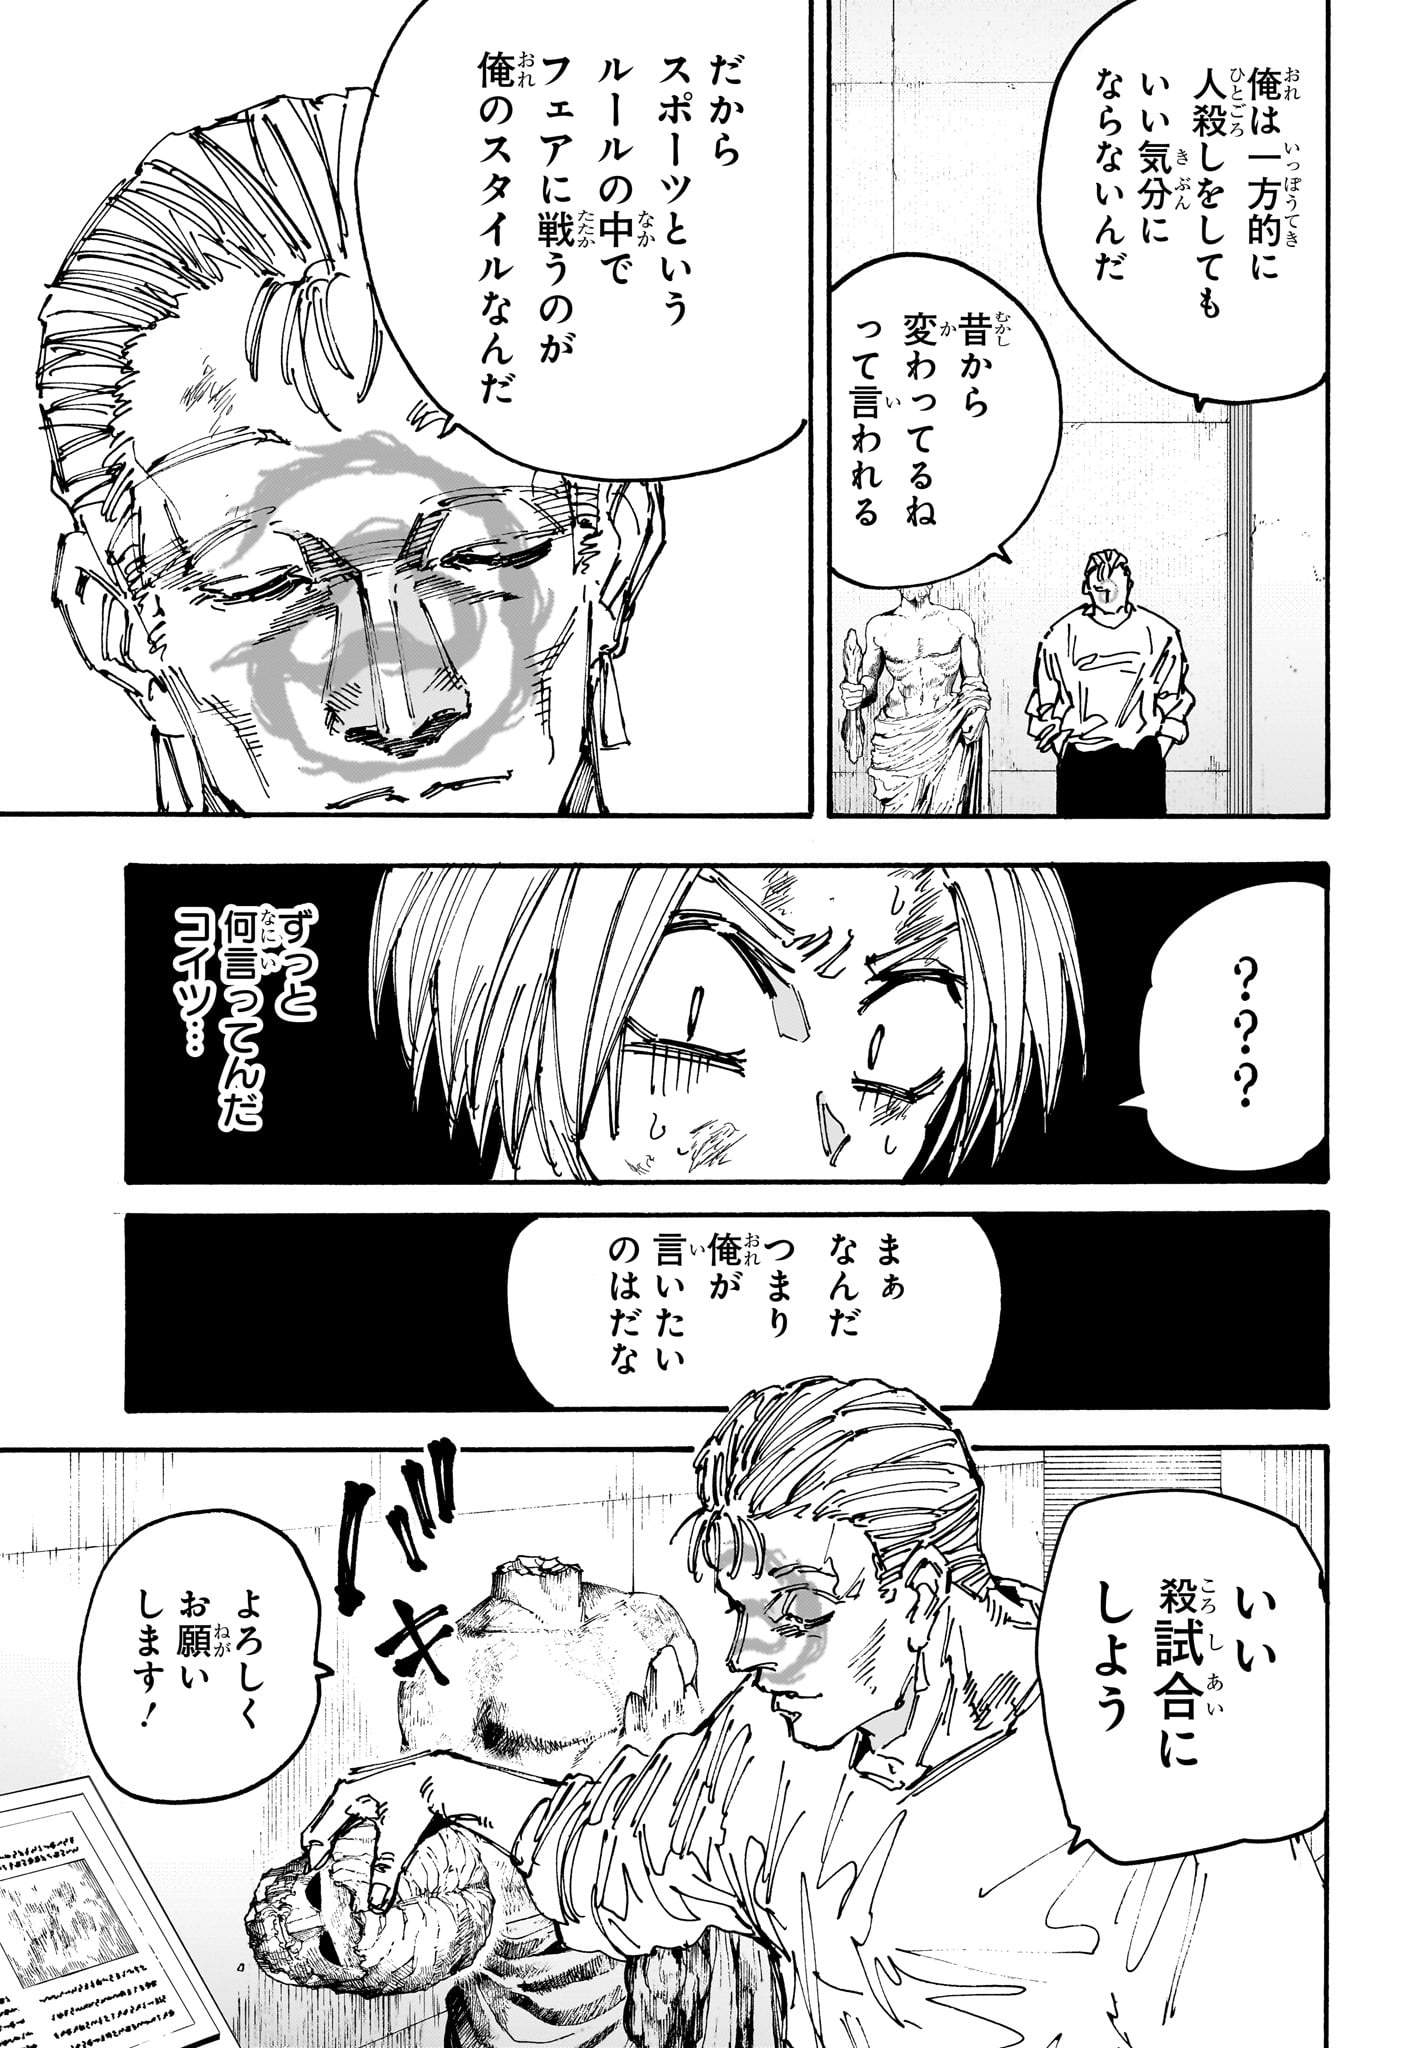 Sakamoto Days - Chapter 157 - Page 3